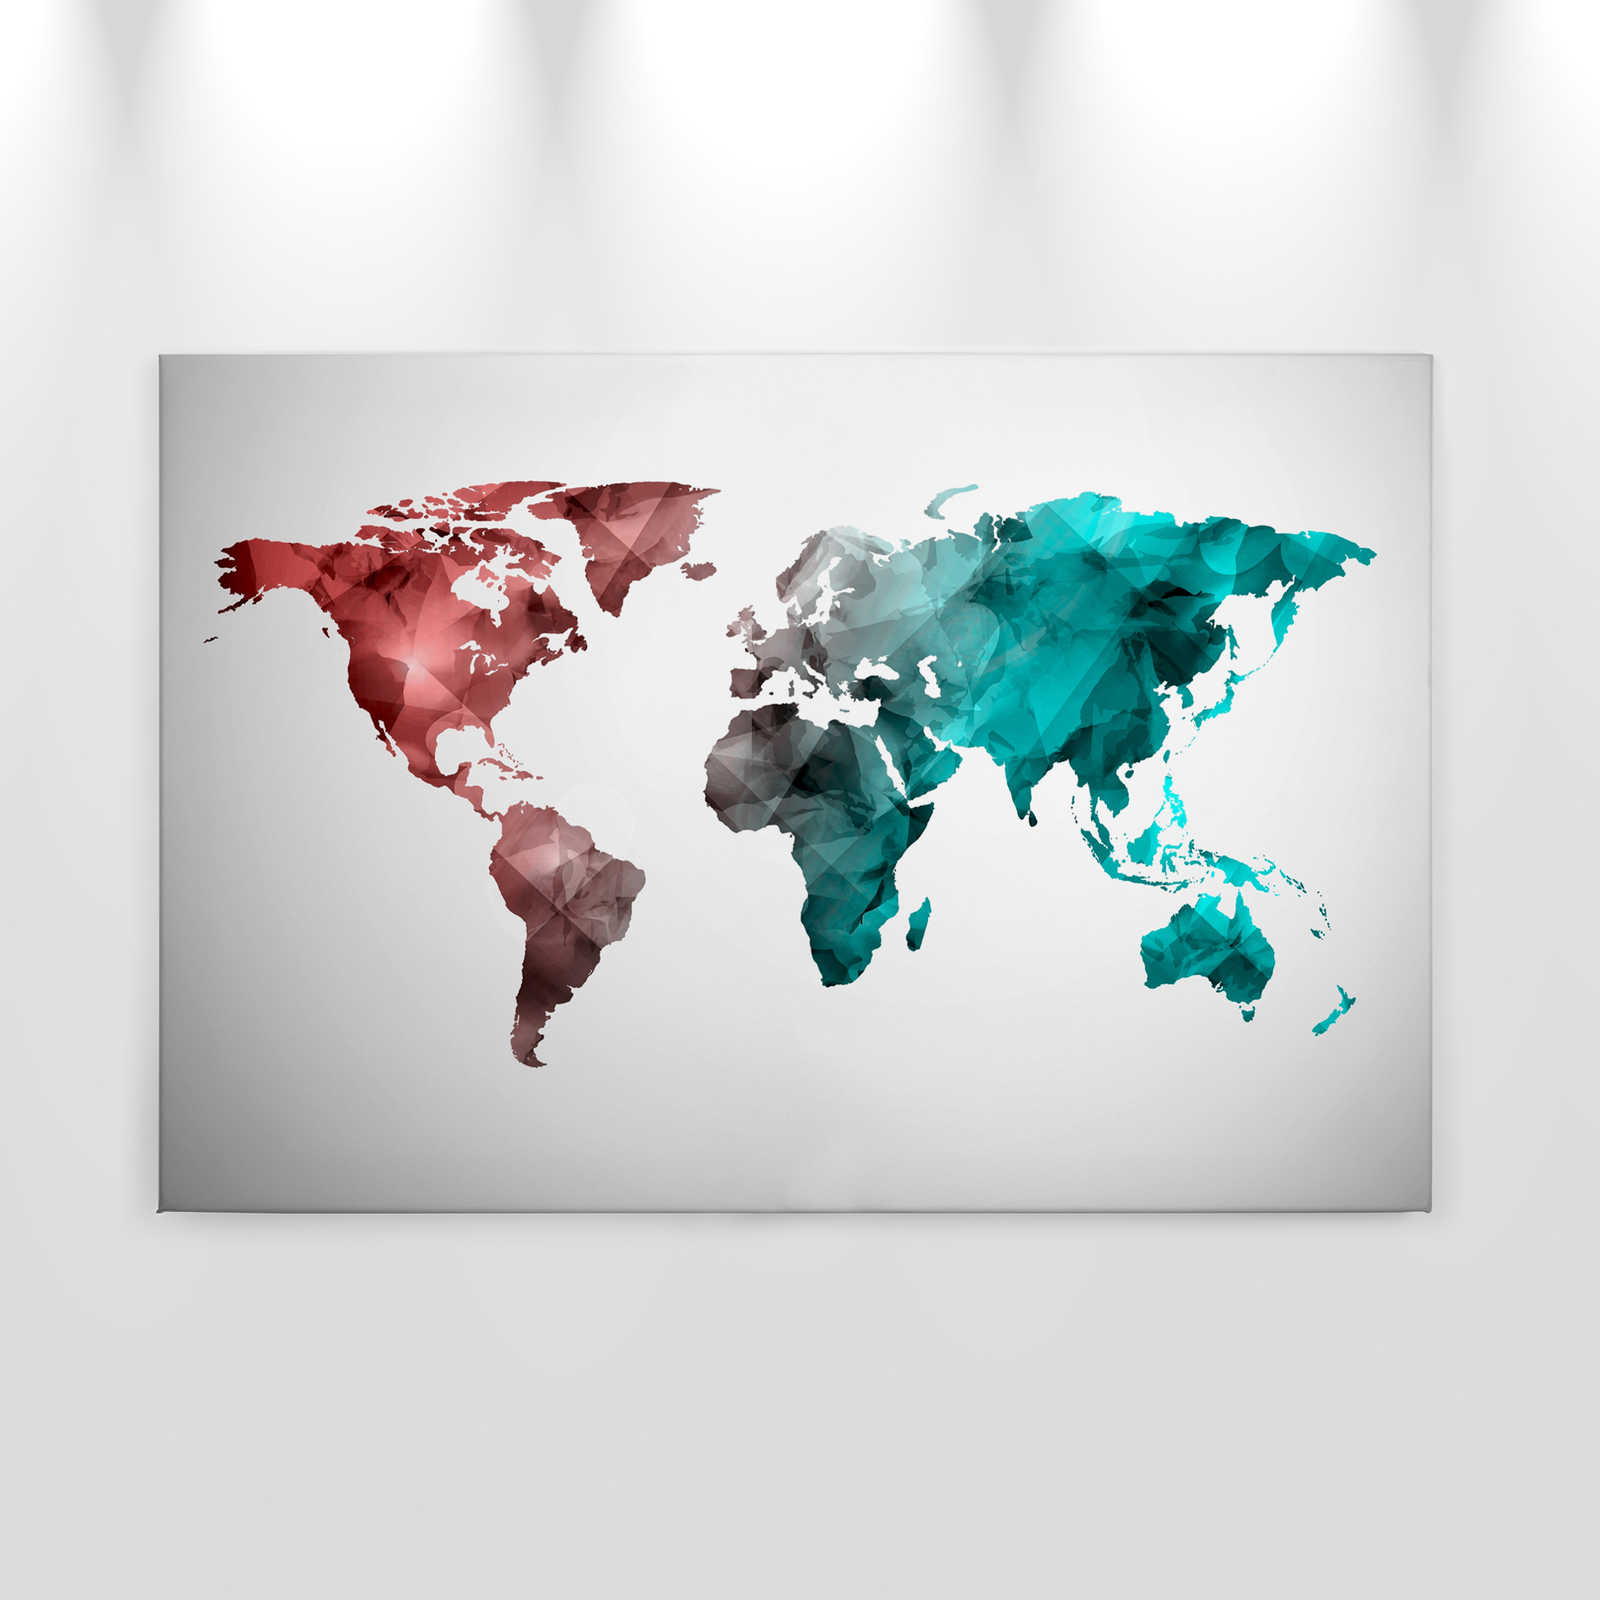             Canvas met wereldkaart gemaakt van grafische elementen | WorldGrafic 2 - 0,90 m x 0,60 m
        